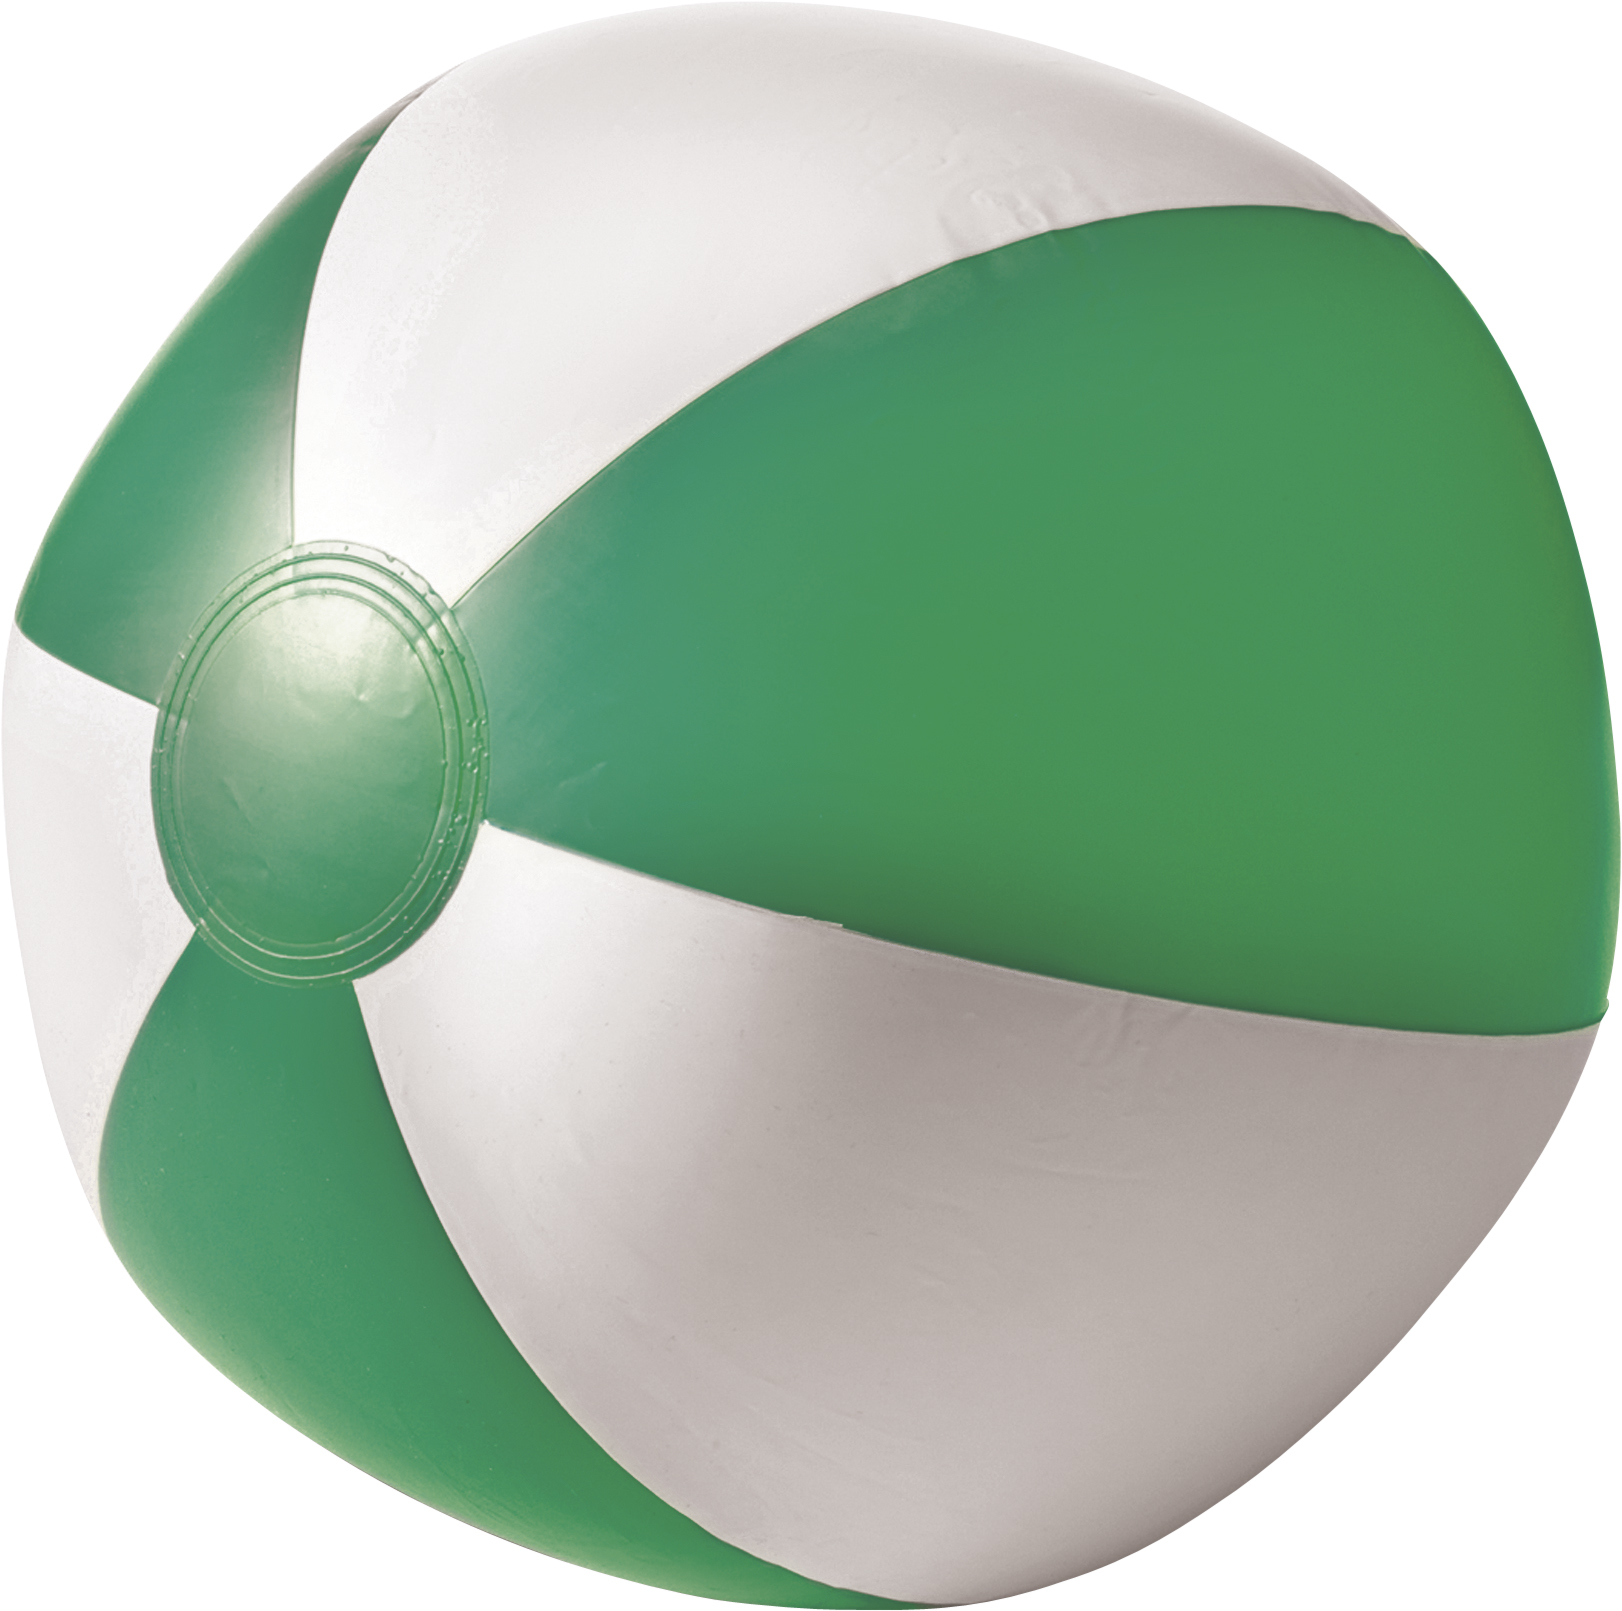 PVC Beach Ball in green